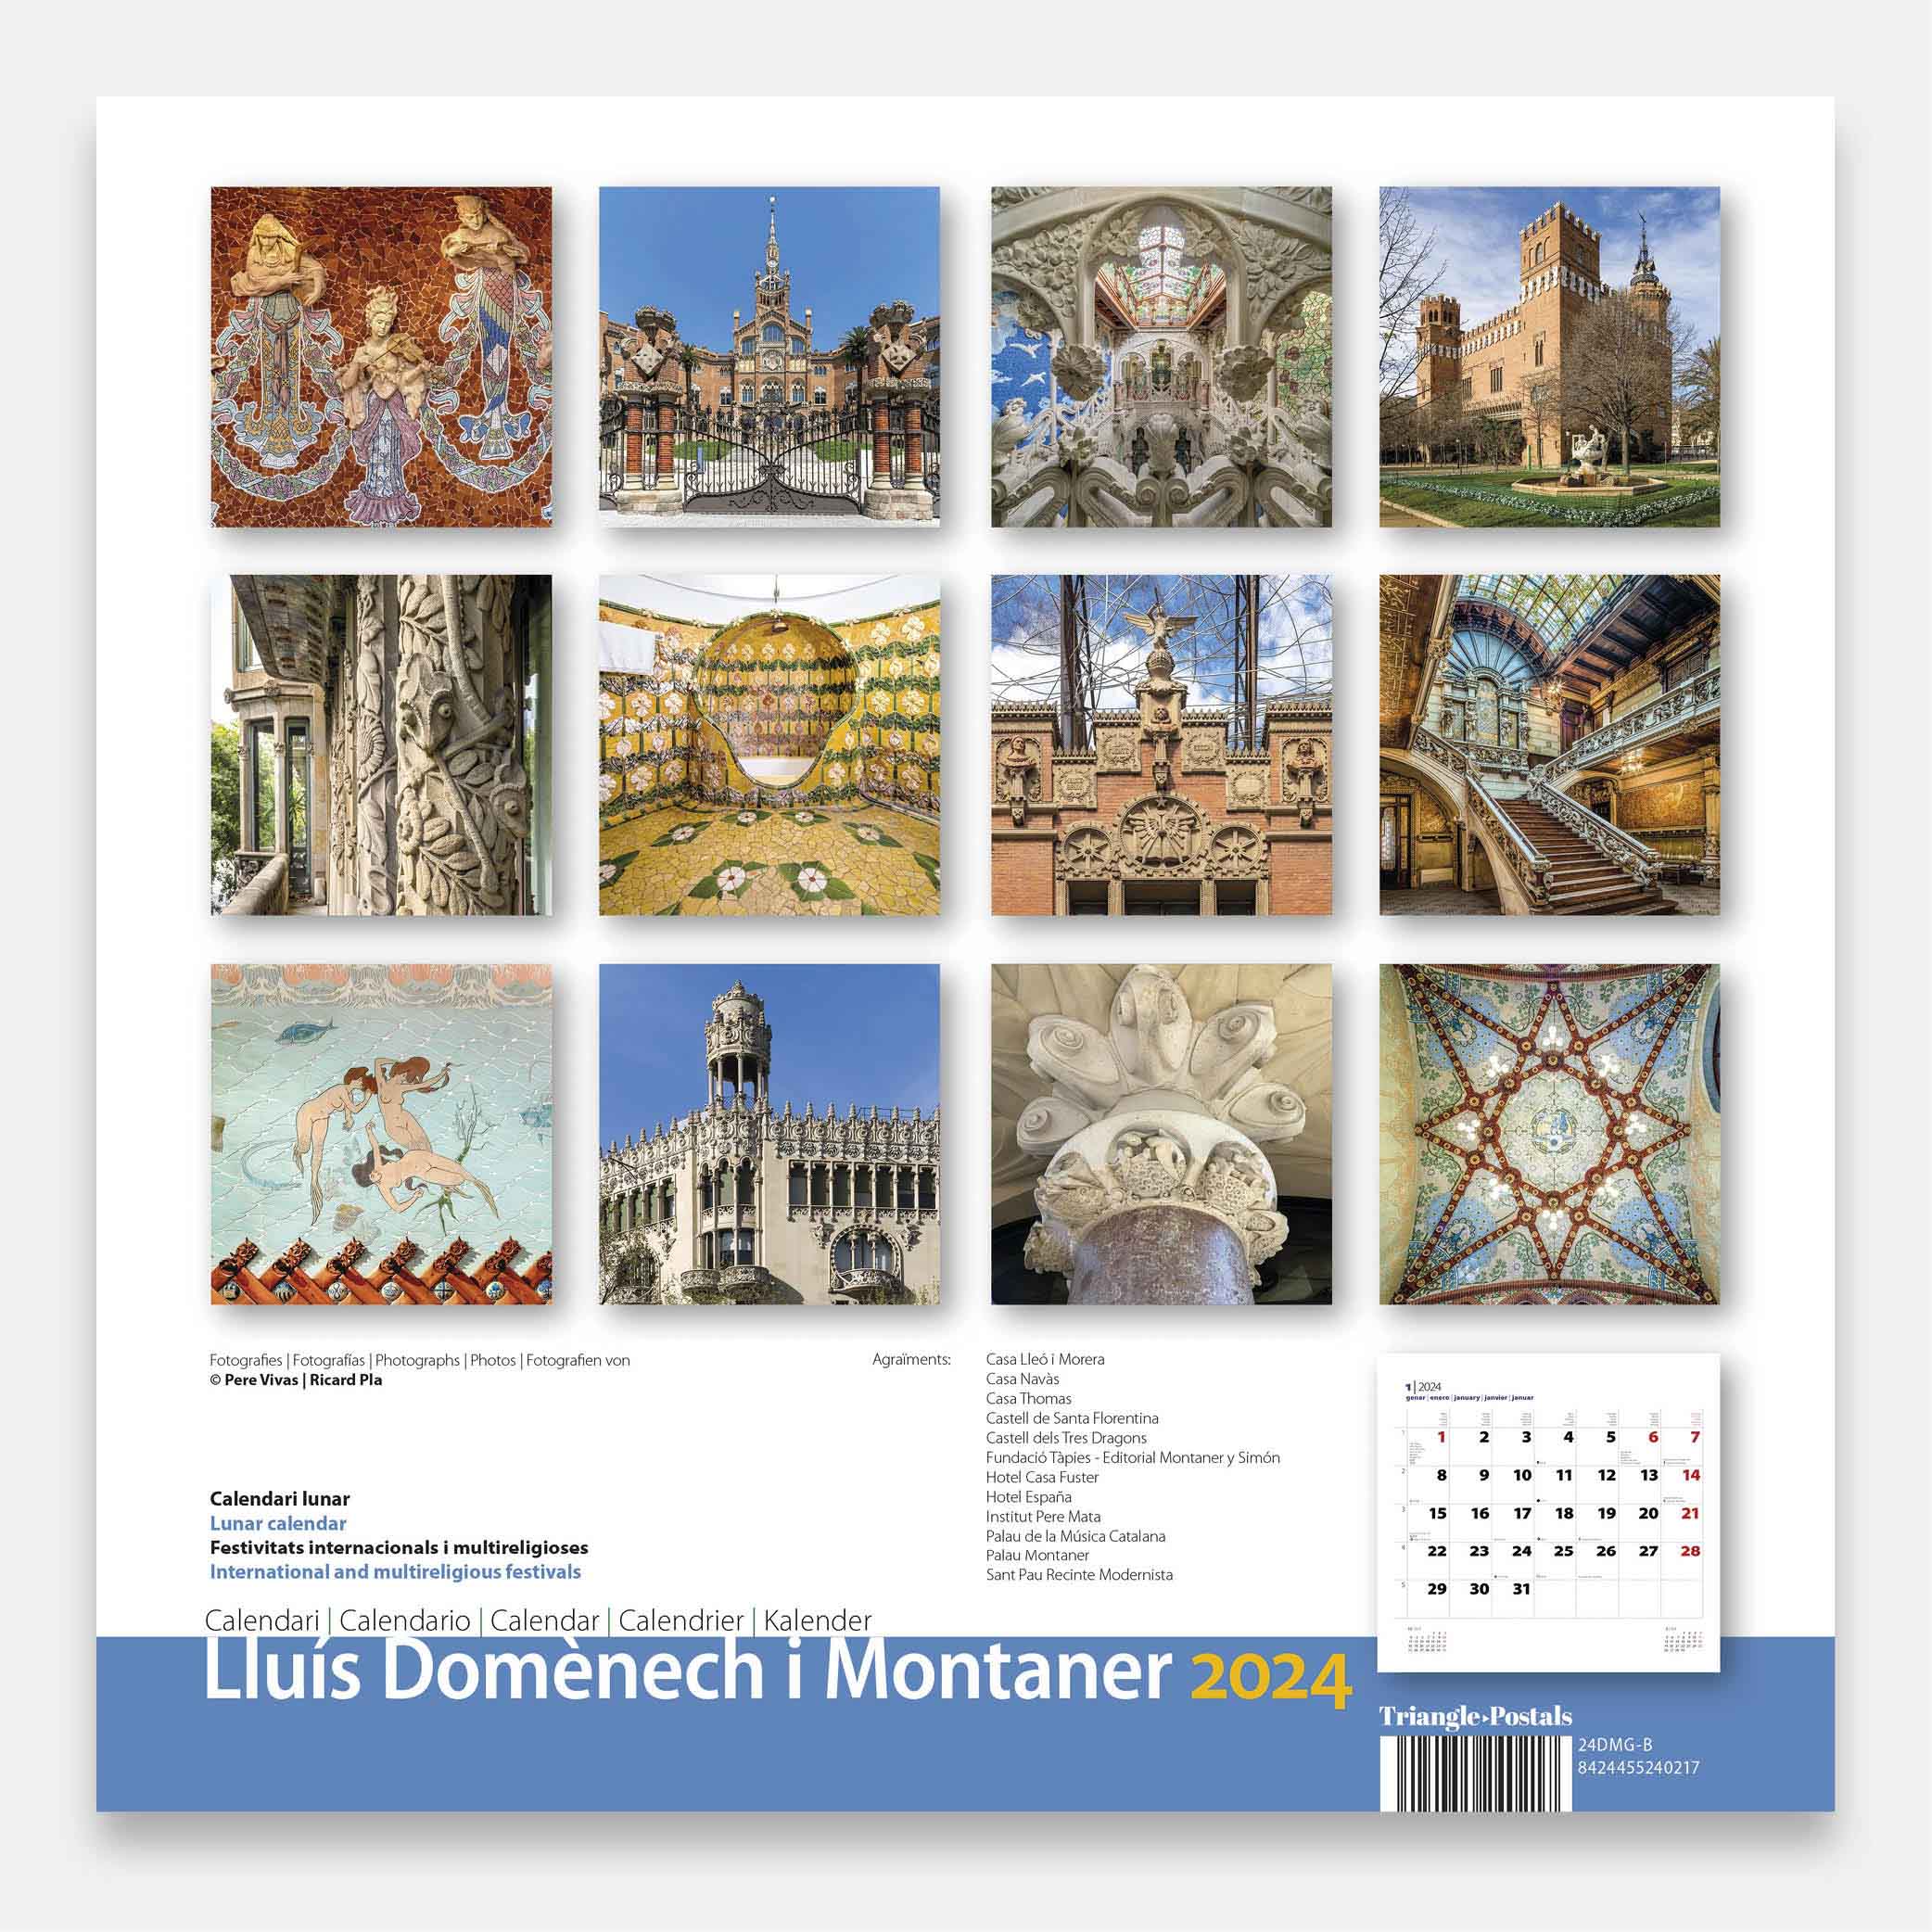 Lluís Domènech i Montaner 24dmg1b2 calendario pared 2024 lluis domenech